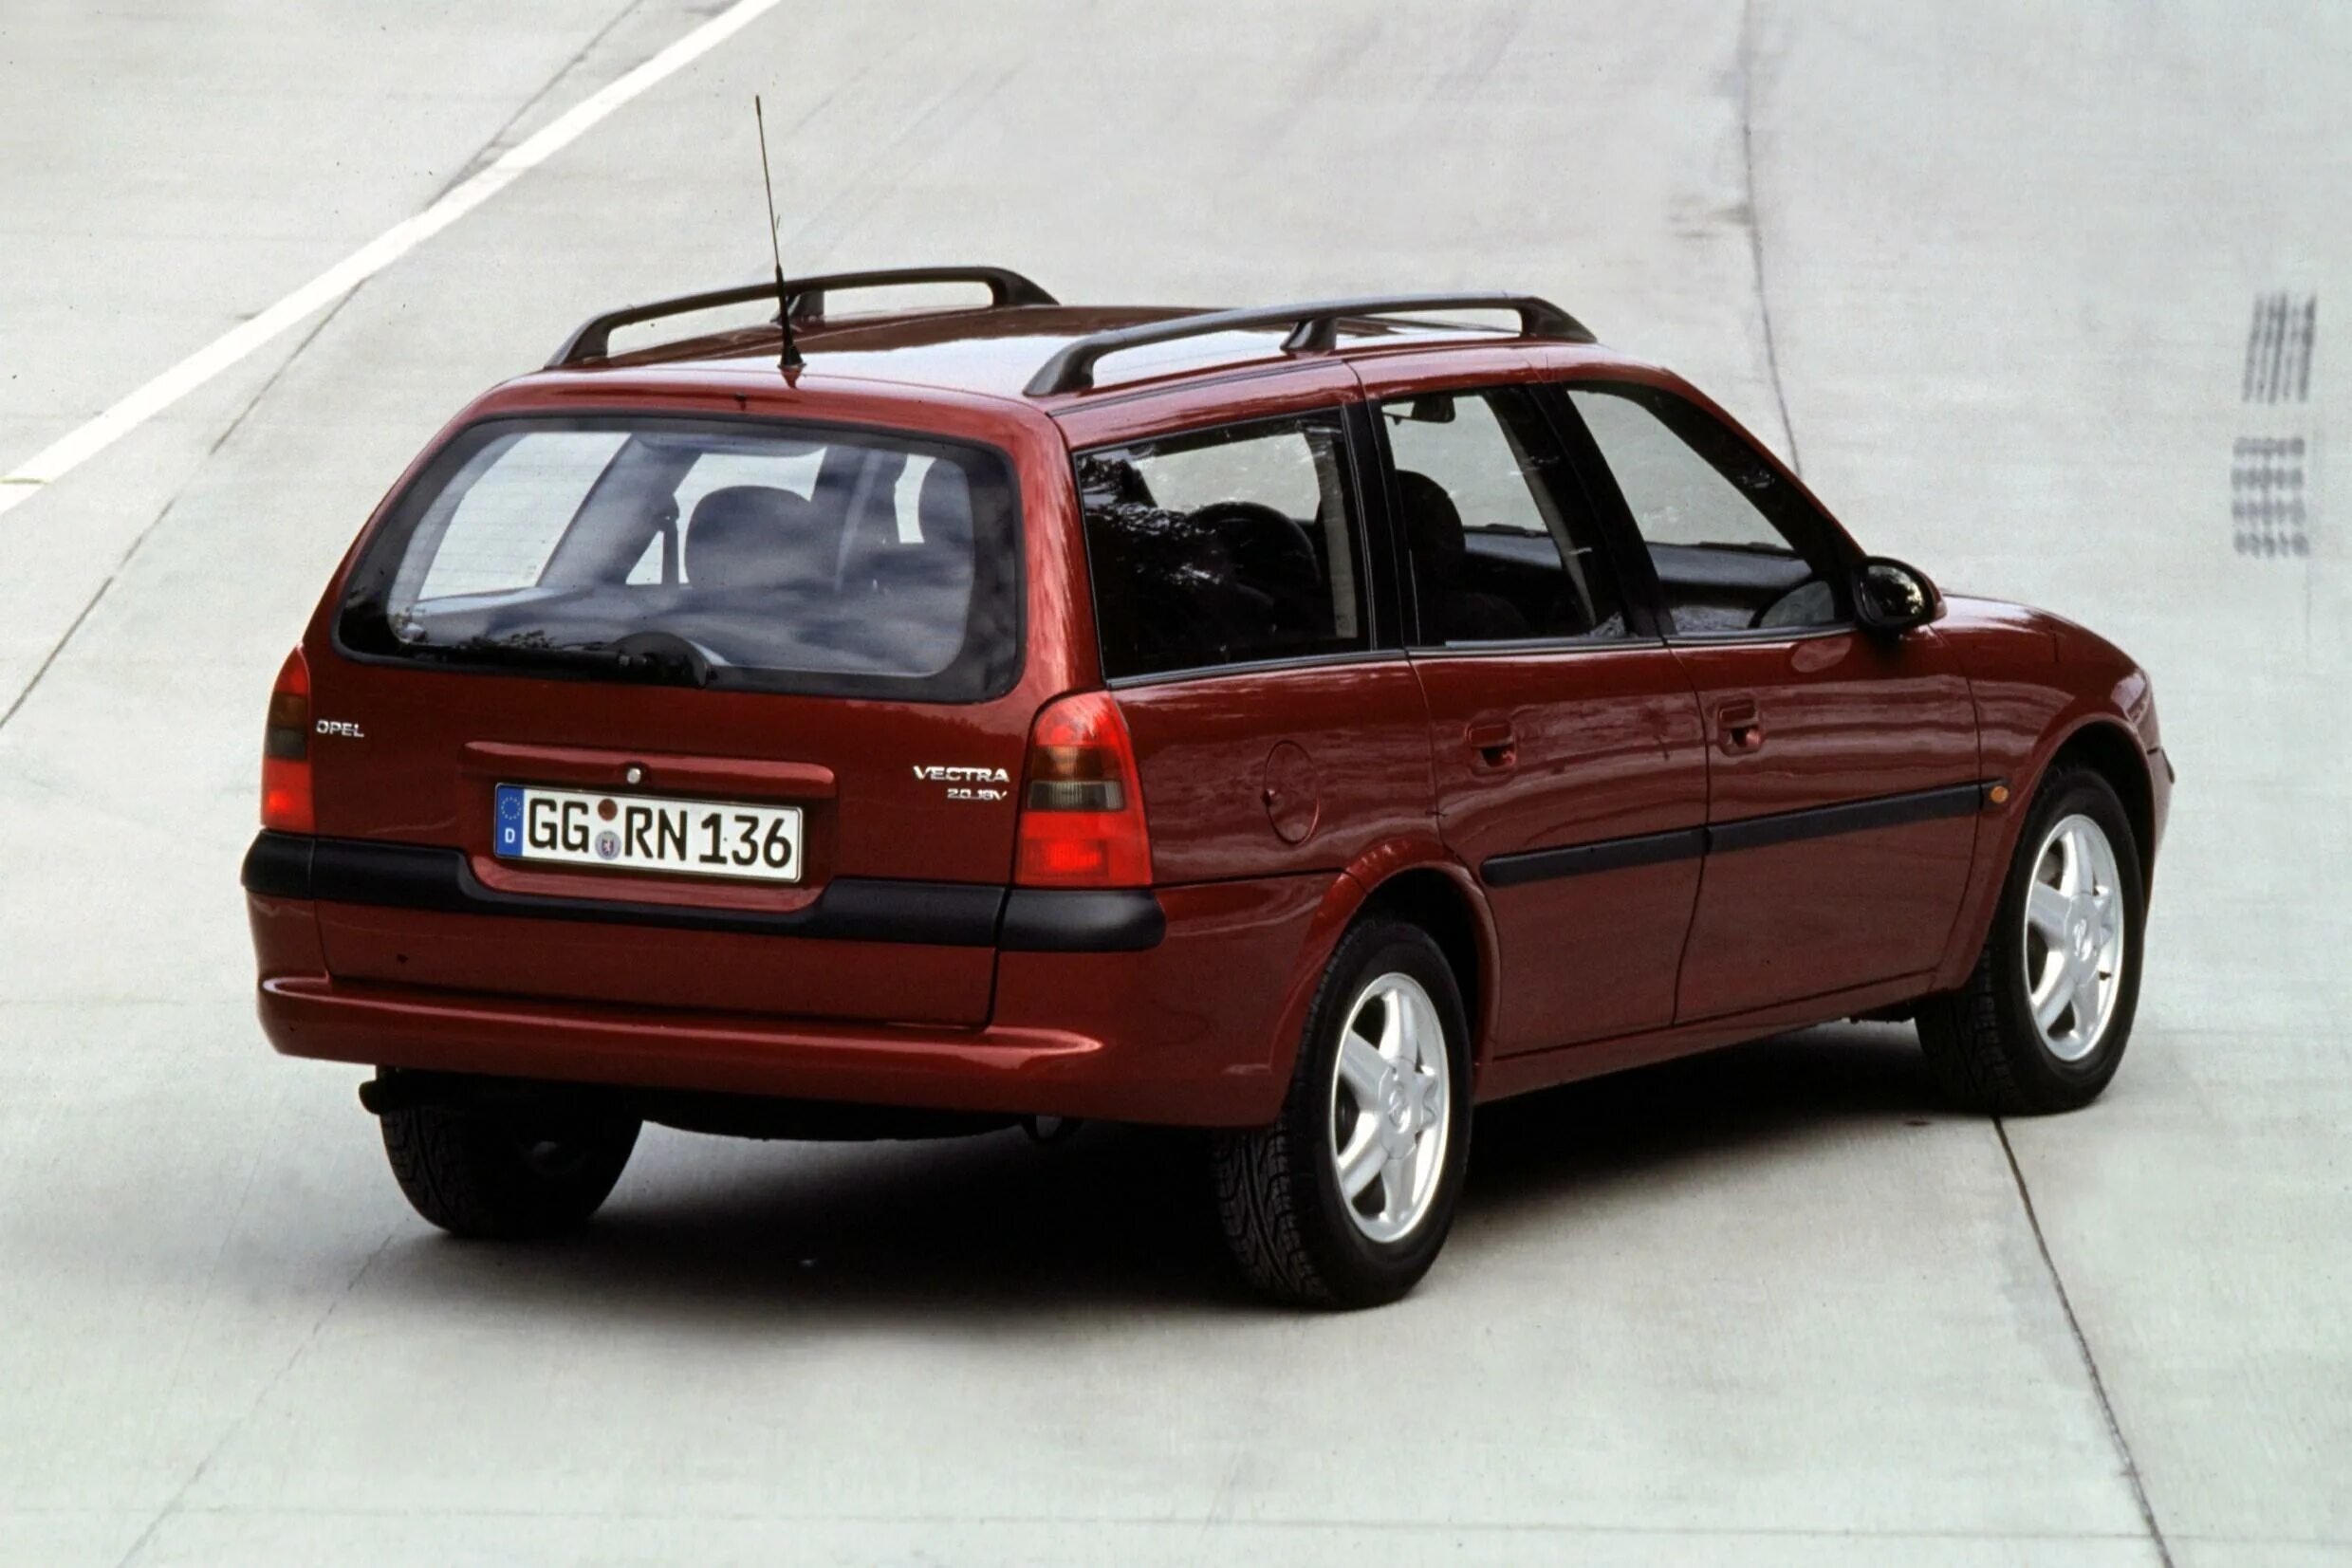 Опель Вектра Караван 1998 универсал. Opel Vectra b Caravan 1998. Opel Vectra универсал 1999. Опель Вектра Караван 2000. Опель универсал характеристика